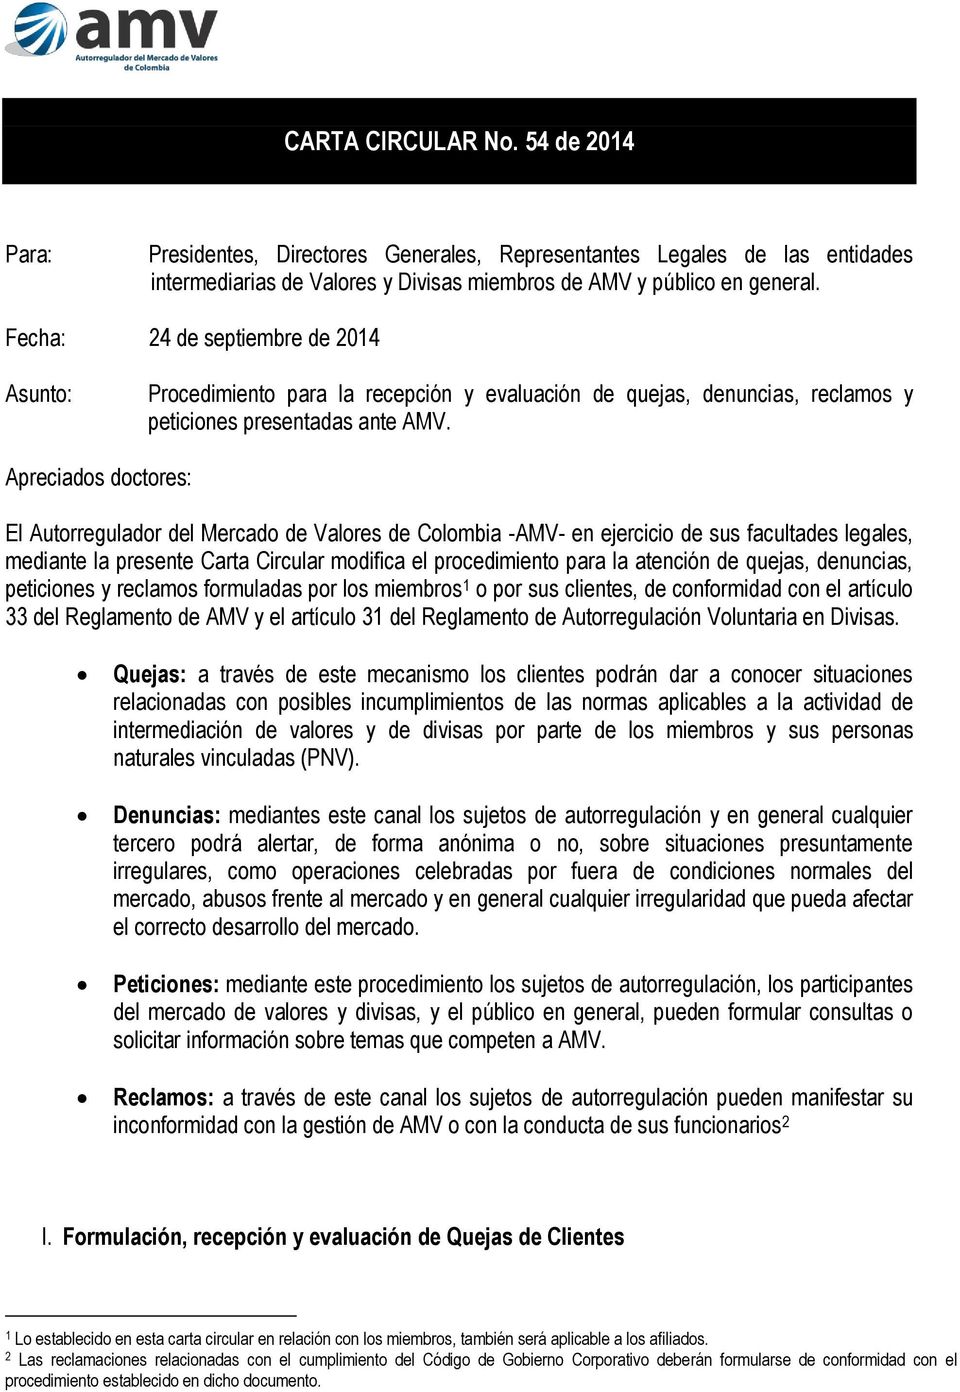 Apreciados doctores: El Autorregulador del Mercado de Valores de Colombia -AMV- en ejercicio de sus facultades legales, mediante la presente Carta Circular modifica el procedimiento para la atención